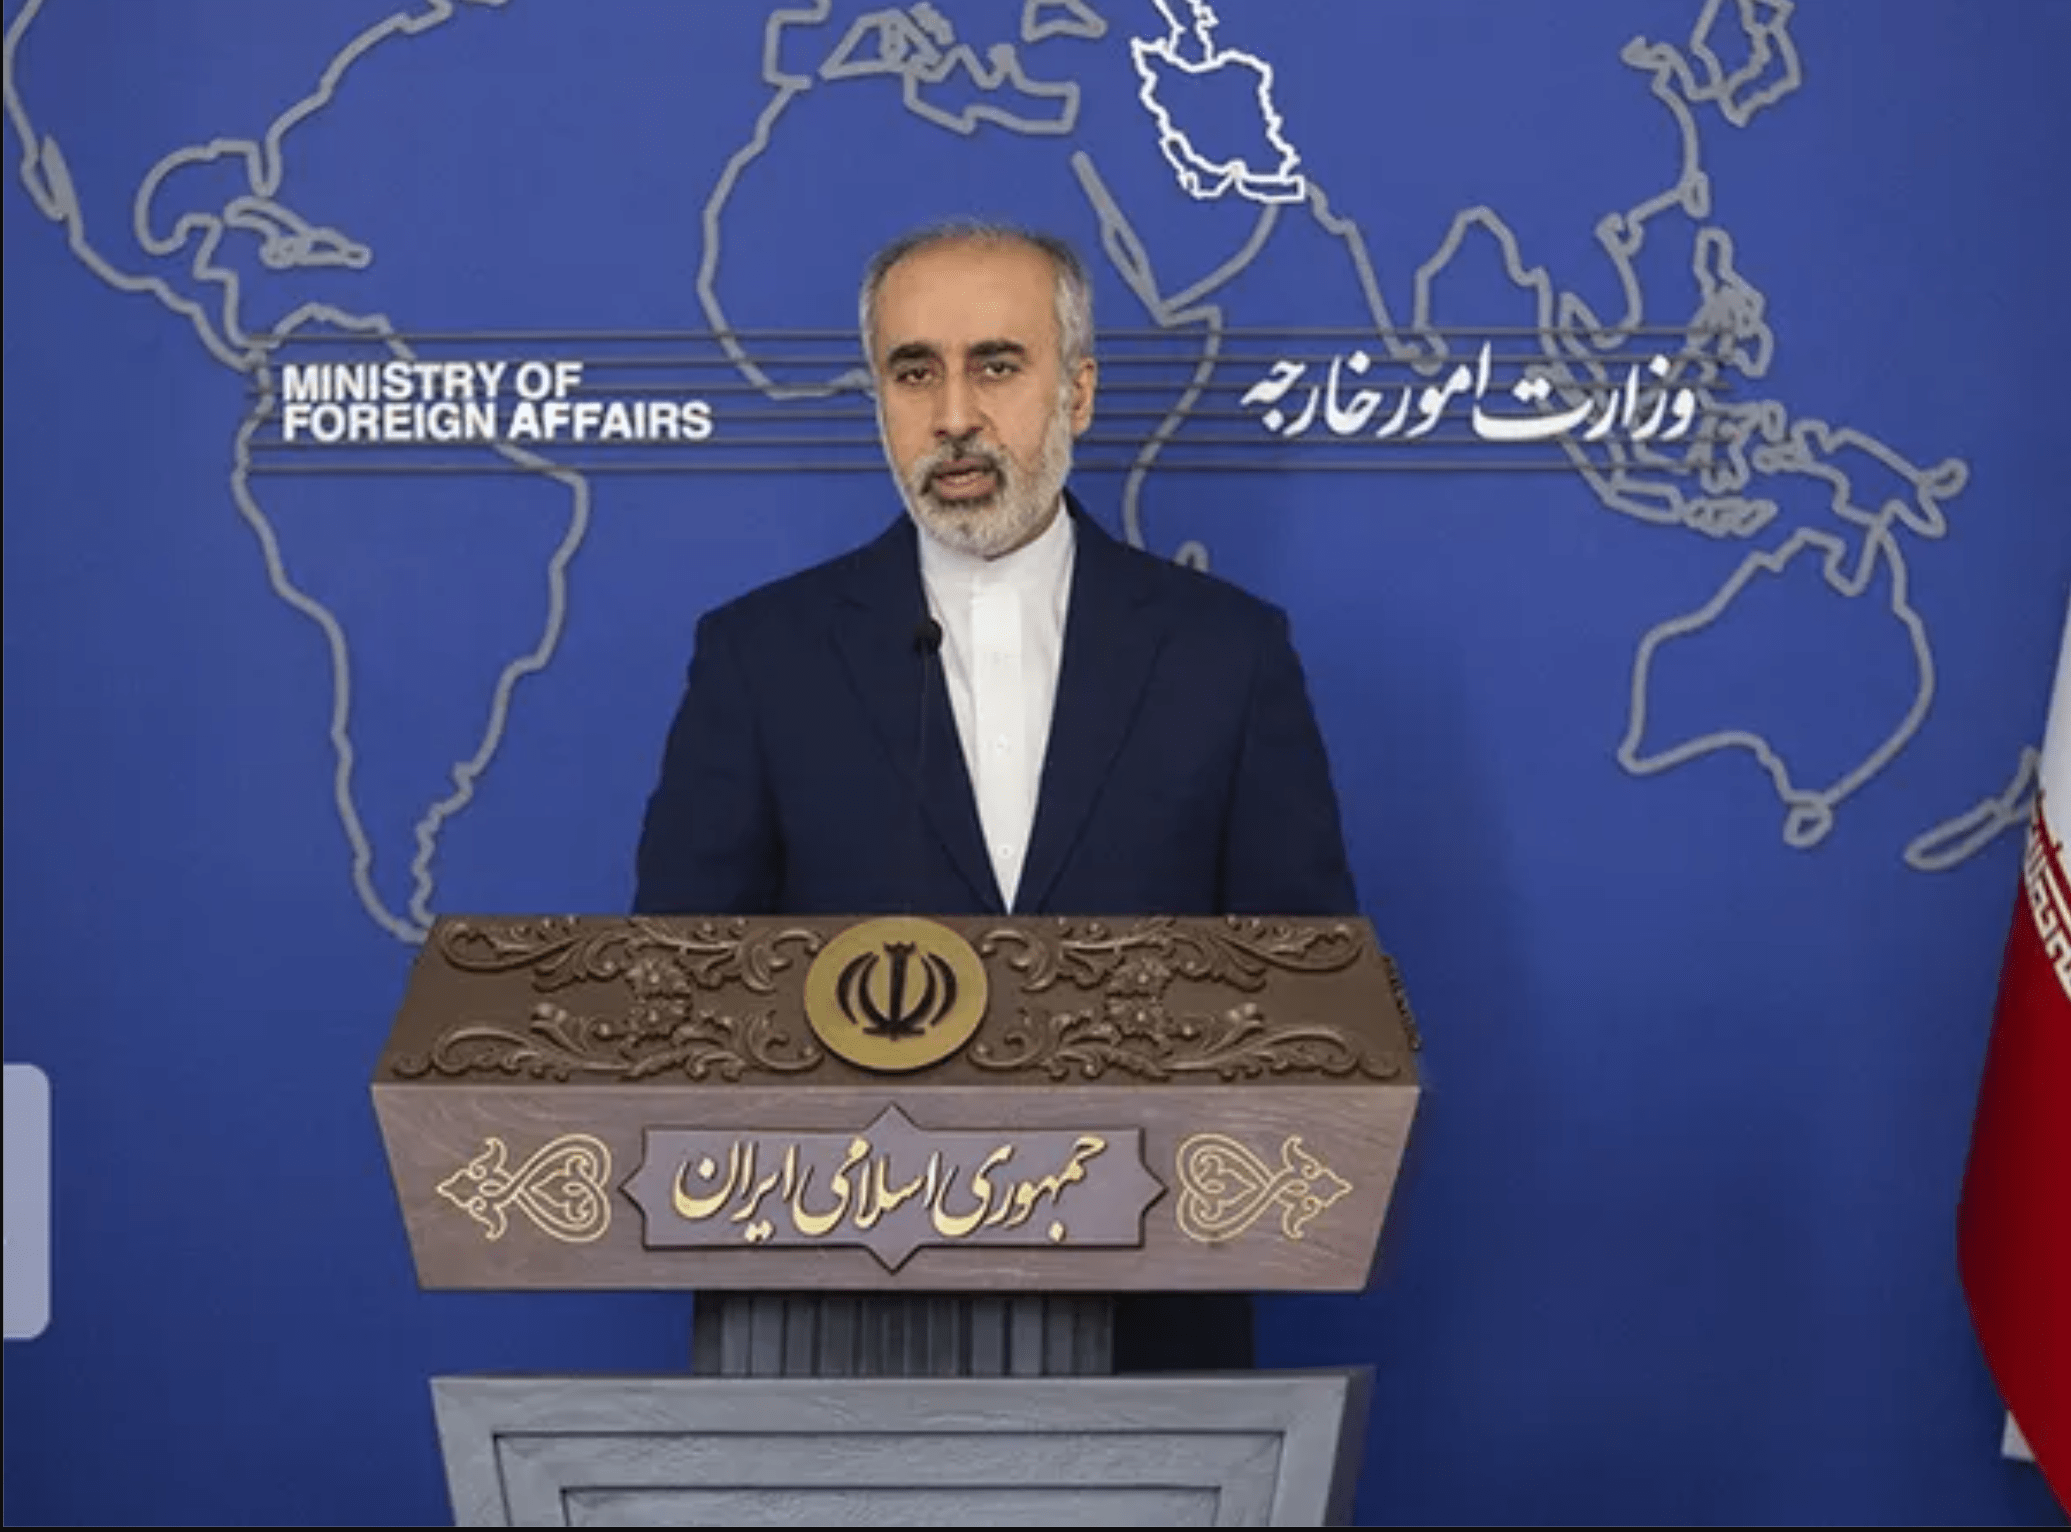 وزارت امور خارجه ایران از توافق برای تبادل زندانیان با آمریکا خبر داد